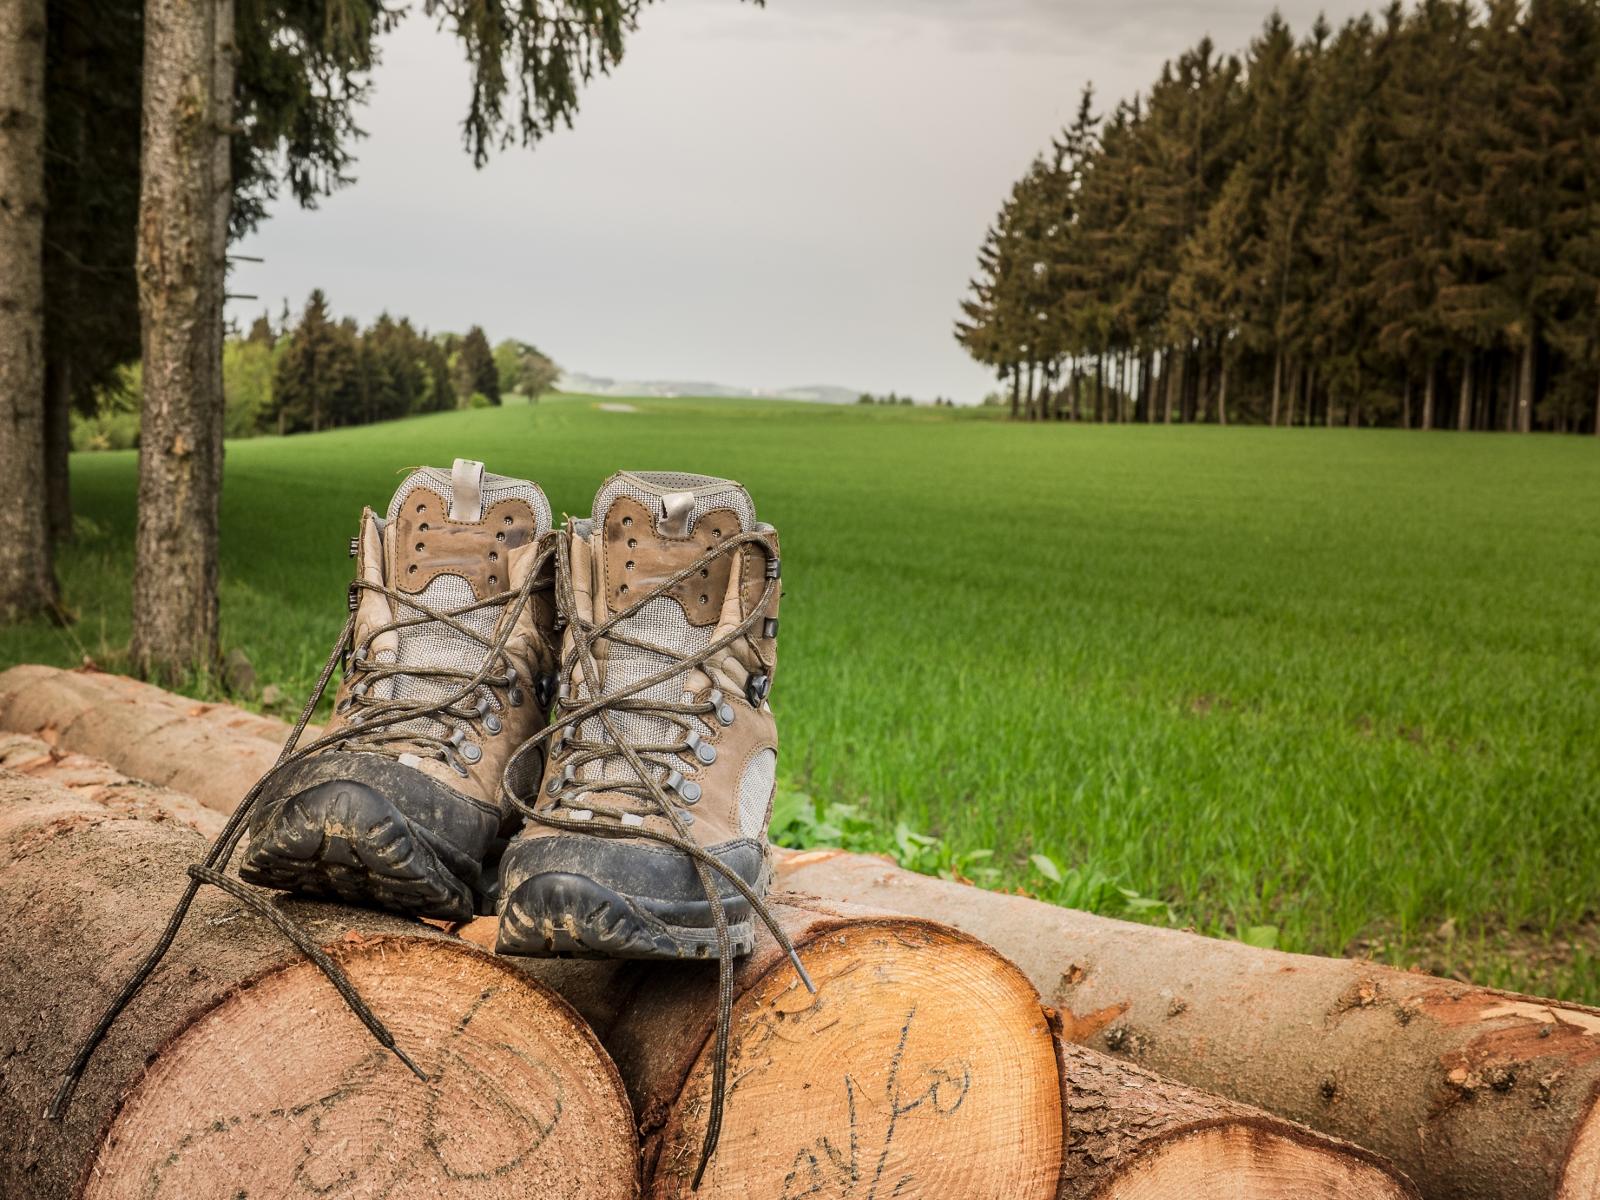 Das Bild zeigt ein Paar Wanderschuhe, das auf einem Holzstapel steht. Im Hintergrund sind Bäume und eine Wiese zu sehen.
                 title=